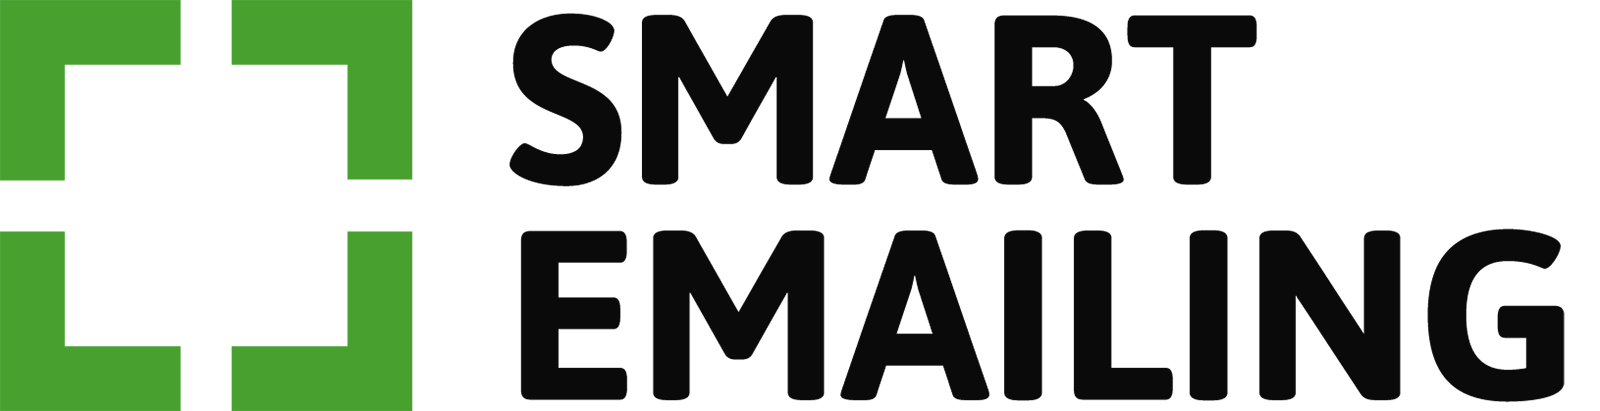 smartemailing logo